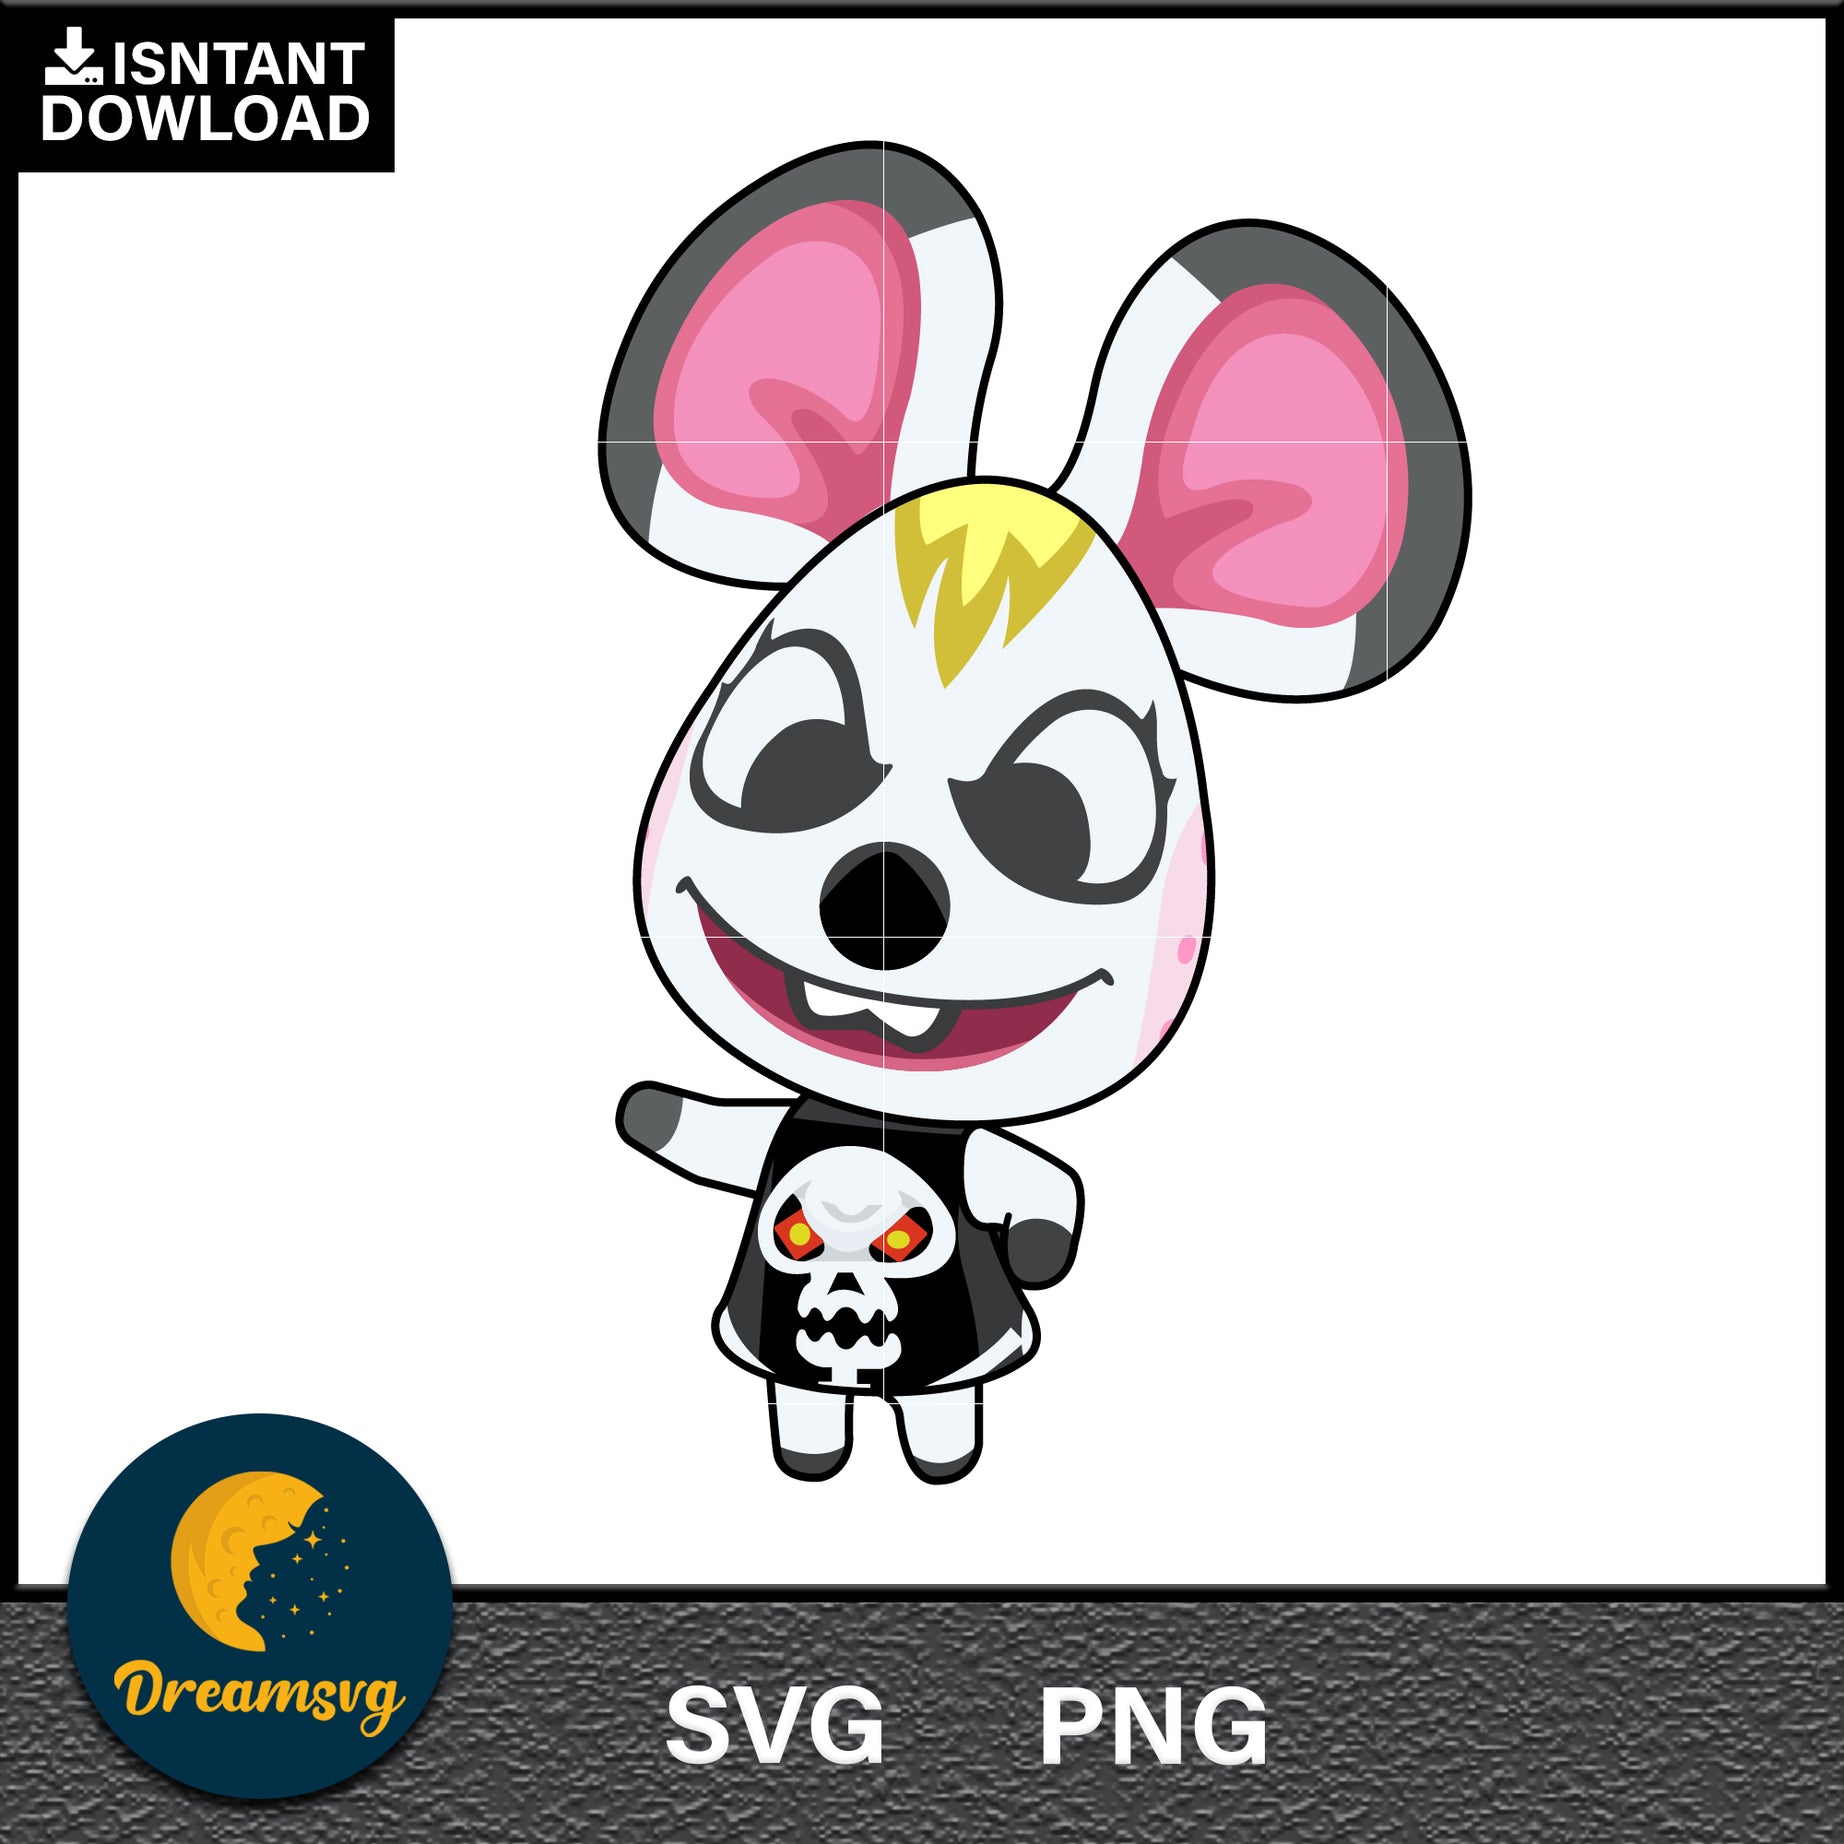 Bella Animal Crossing Svg, Animal Crossing Svg, Animal Crossing Png, Cartoon svg, svg, png digital file